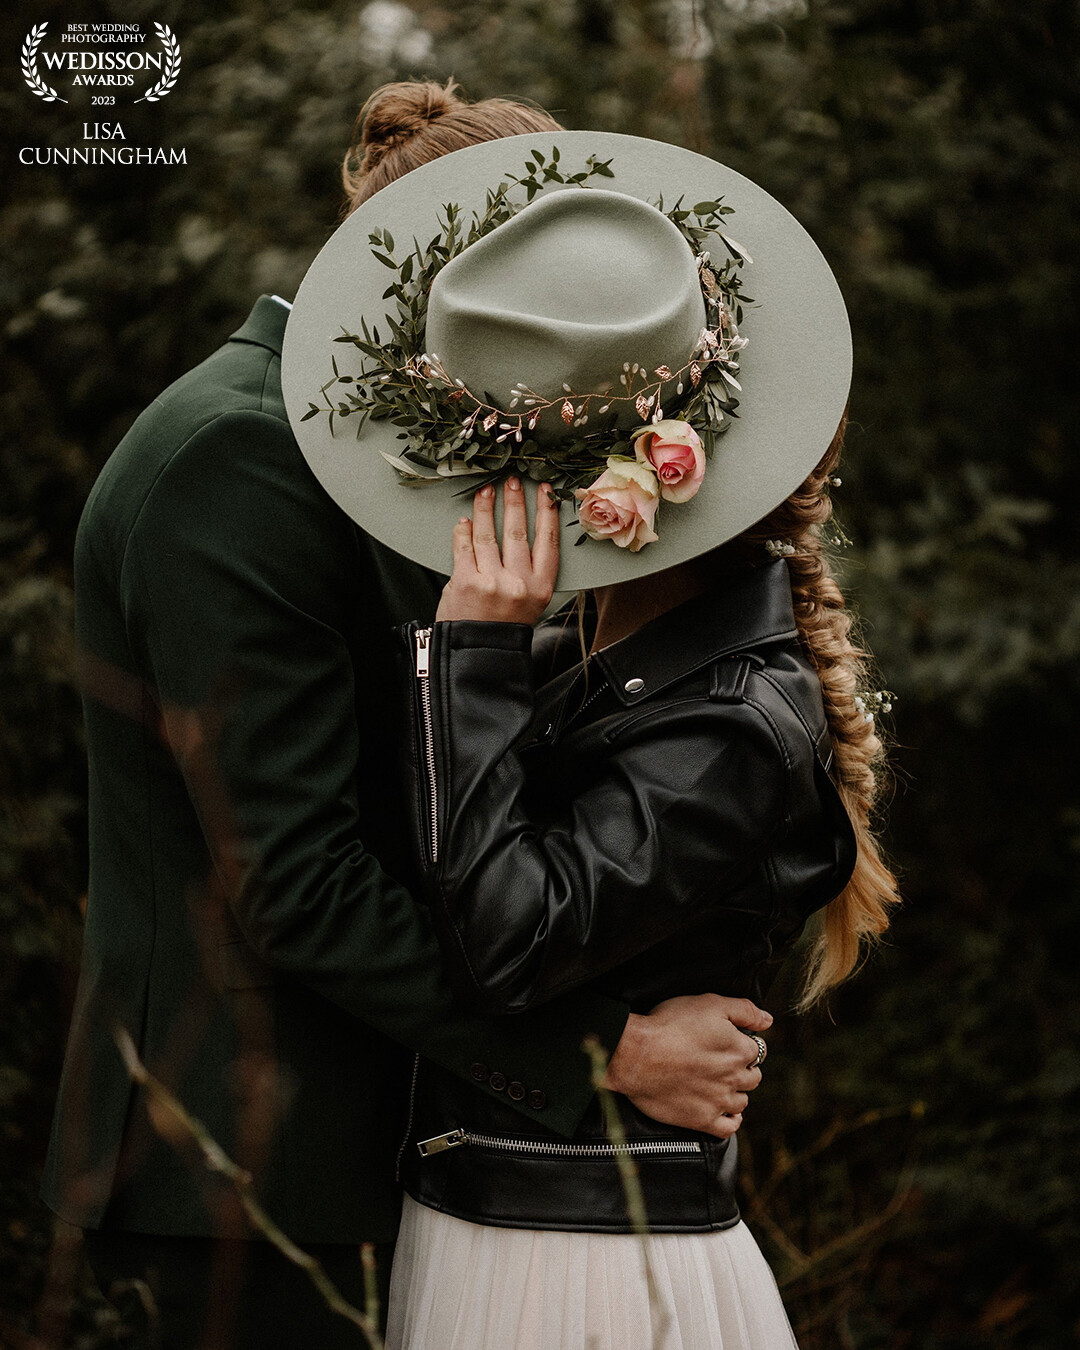 Soms heb je als bruidspaar ook gewoon even een momentje voor jullie samen nodig. Zo'n prachtige hoed is dan natuurlijk een perfecte verstopplek.